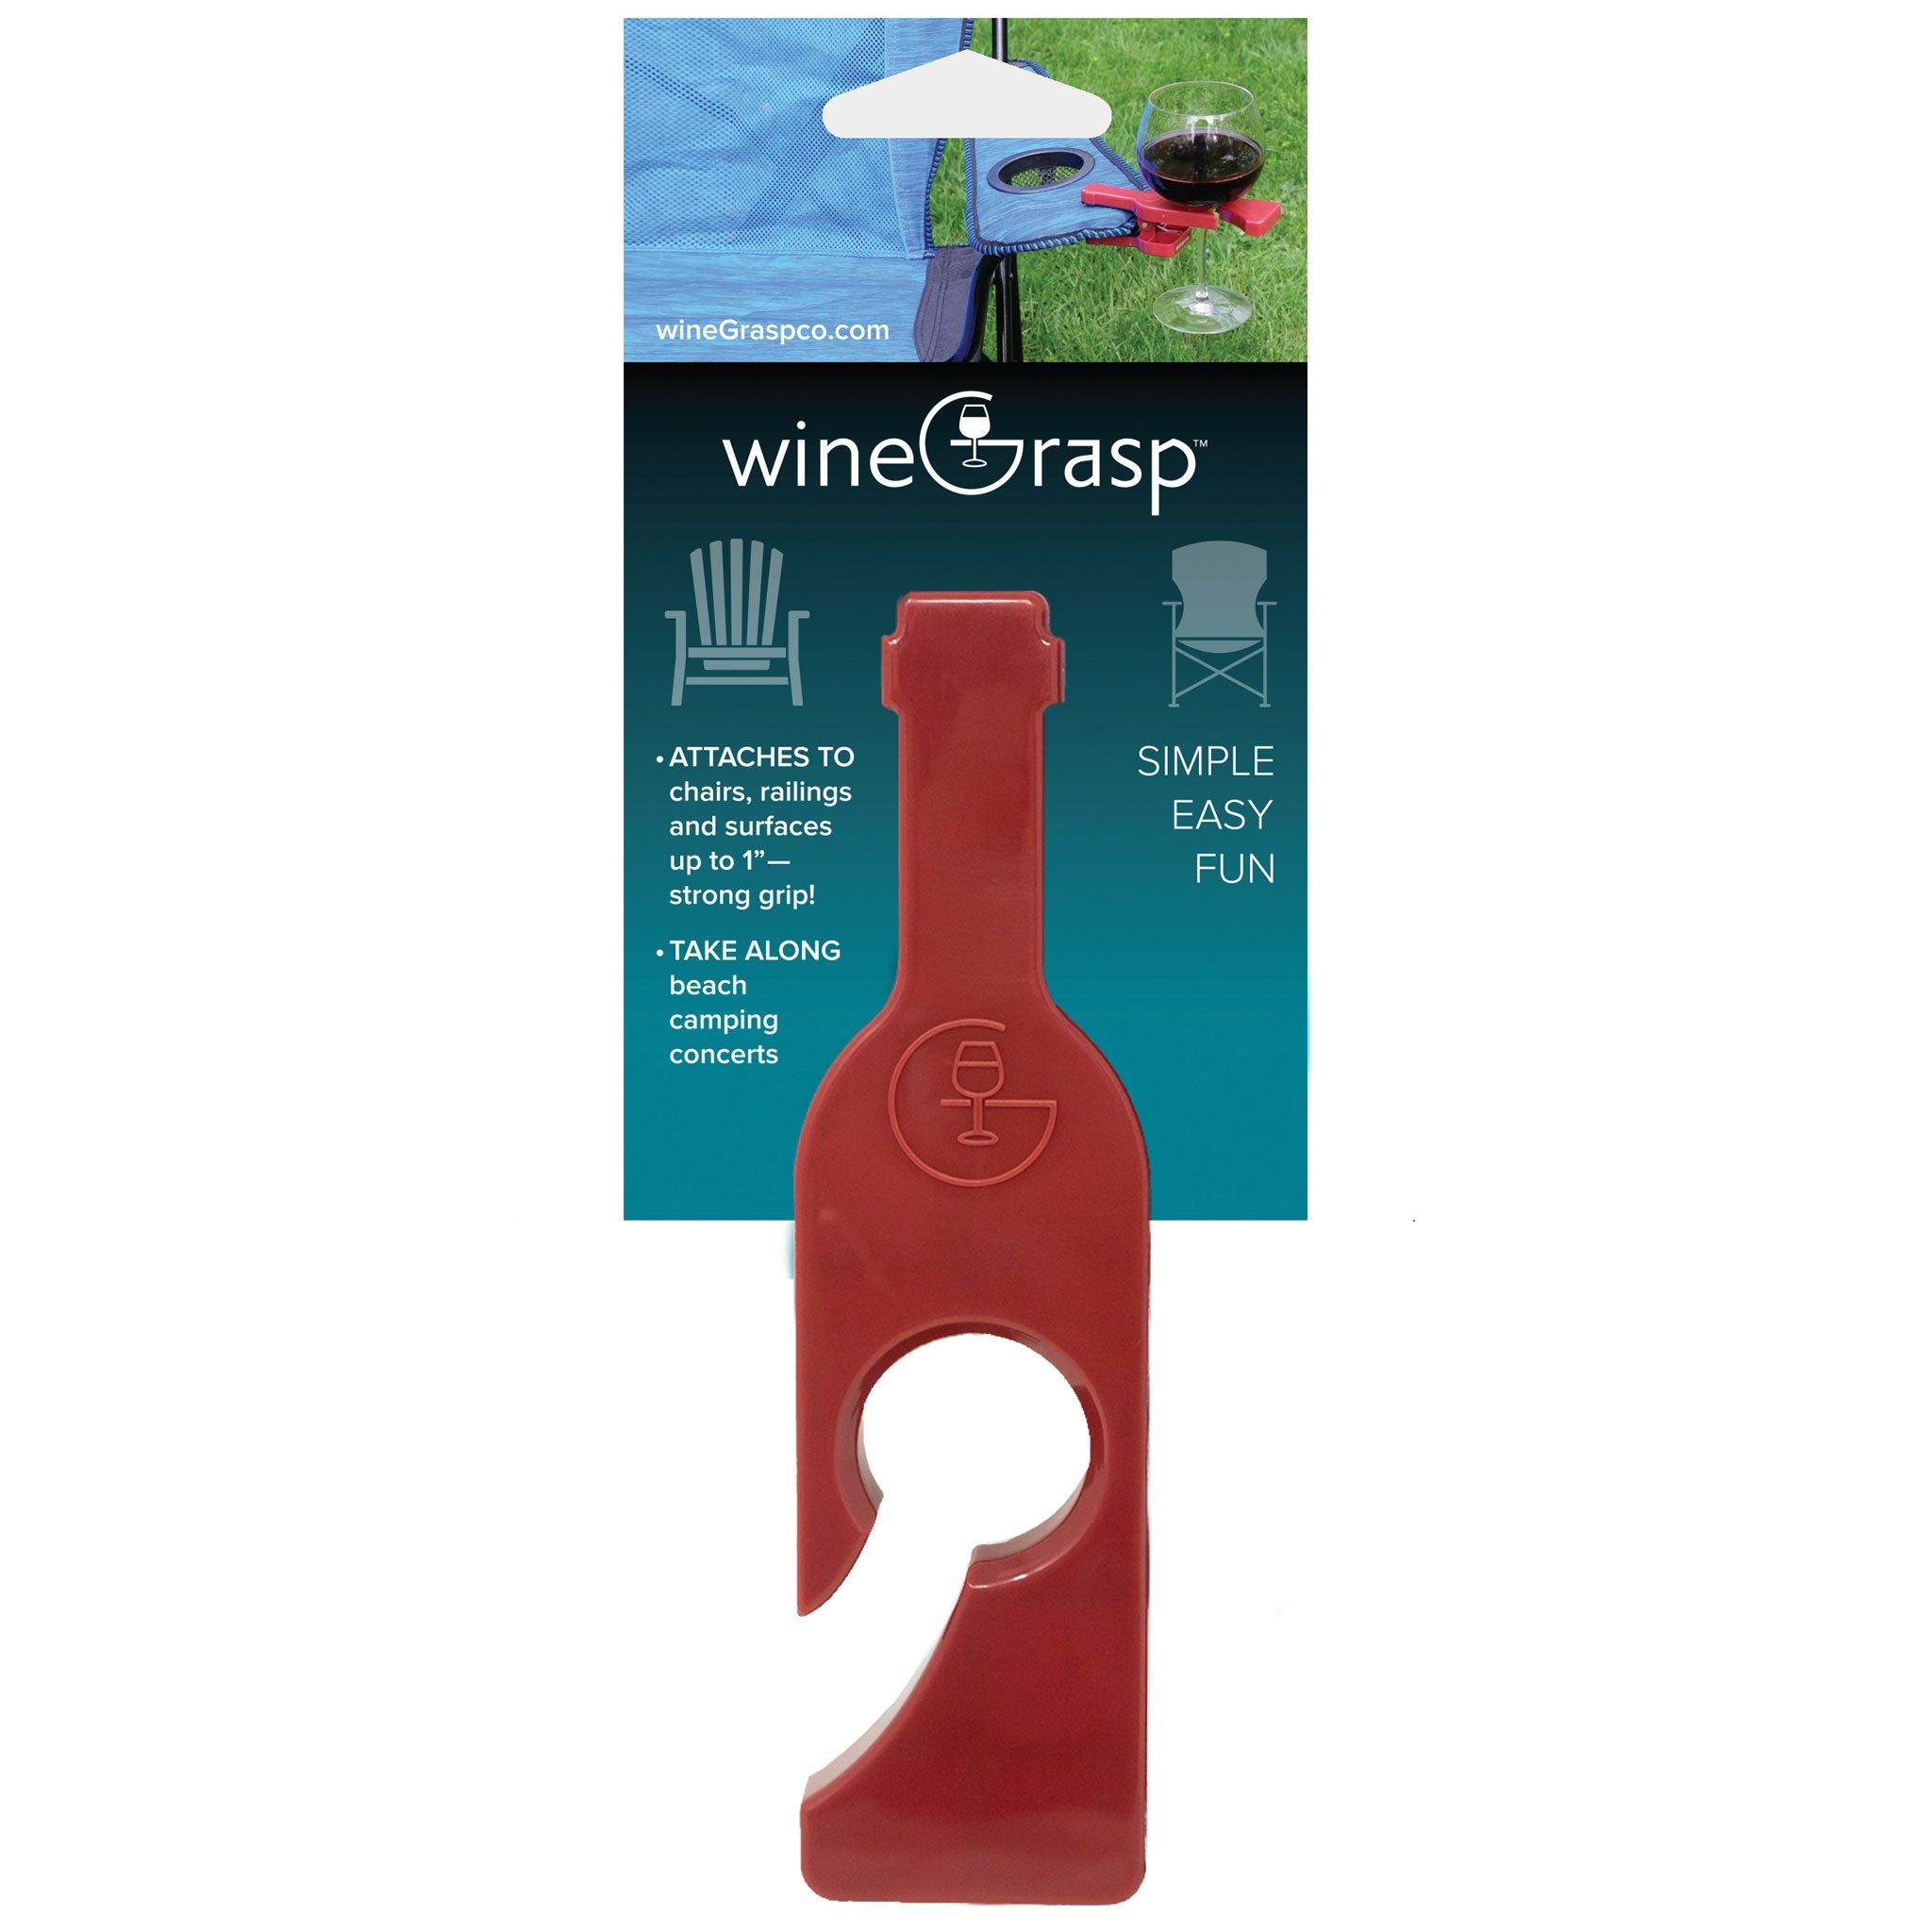 (24) wineGrasp® Singles, + (24) wineGrasp® Sets, (1) Cardboard Floor Display, (1) Sample wineGrasp